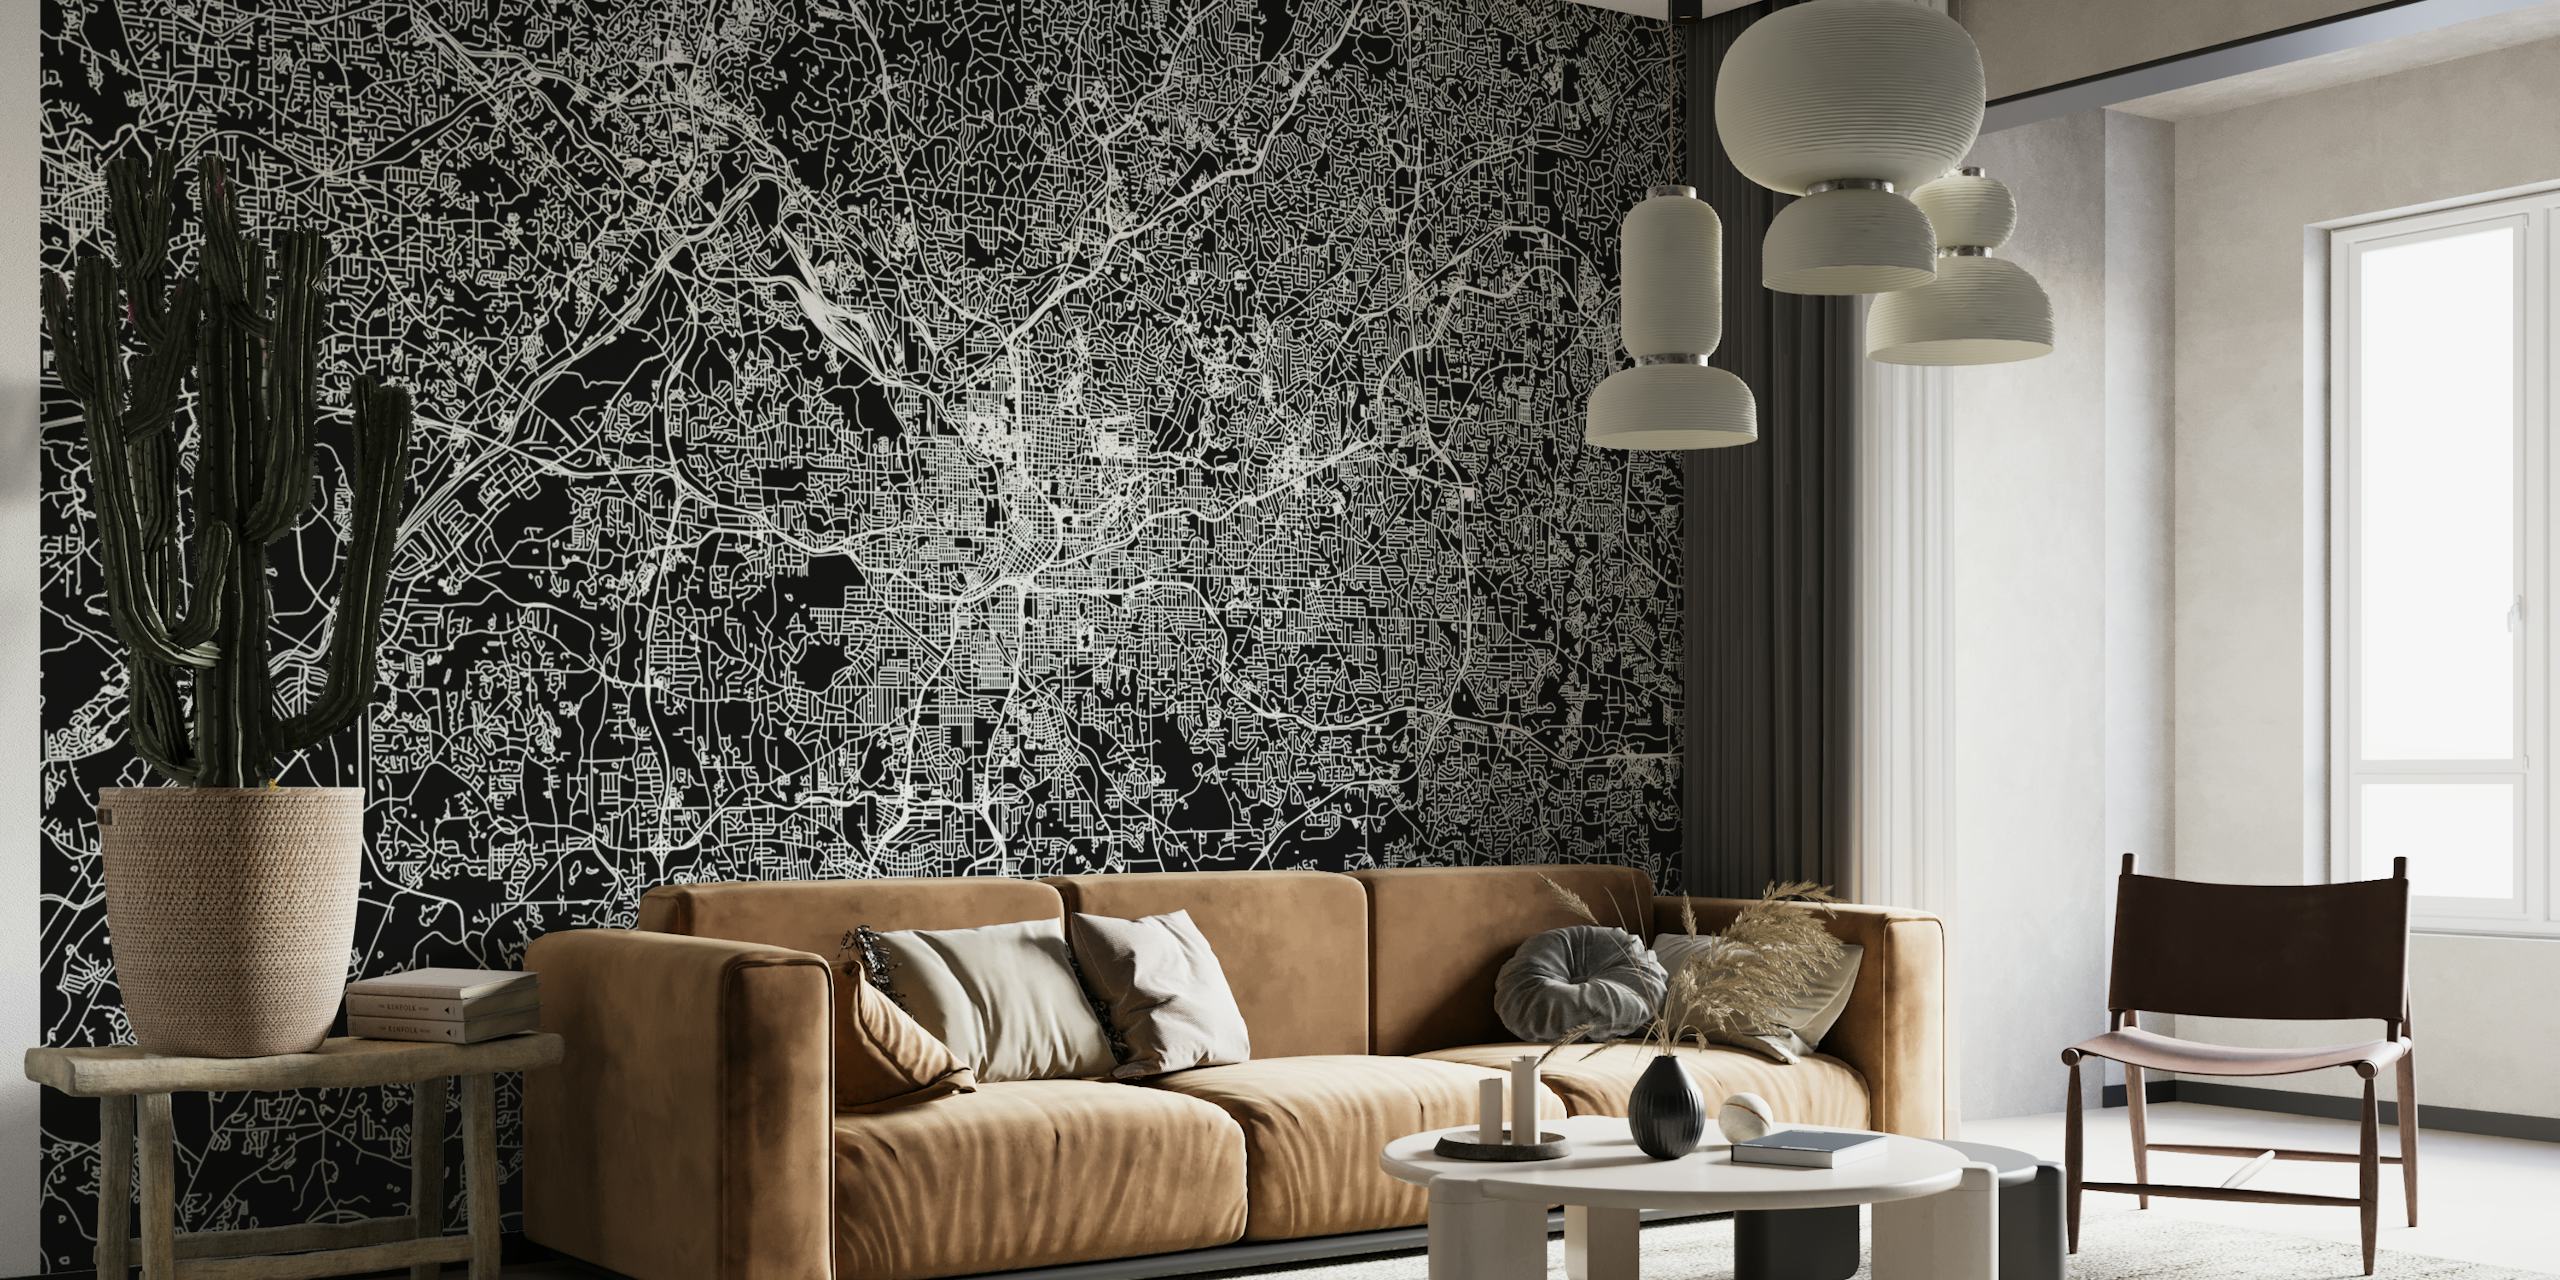 Elegante mural con mapas en blanco y negro del diseño de la ciudad de Atlanta para una decoración interior moderna.